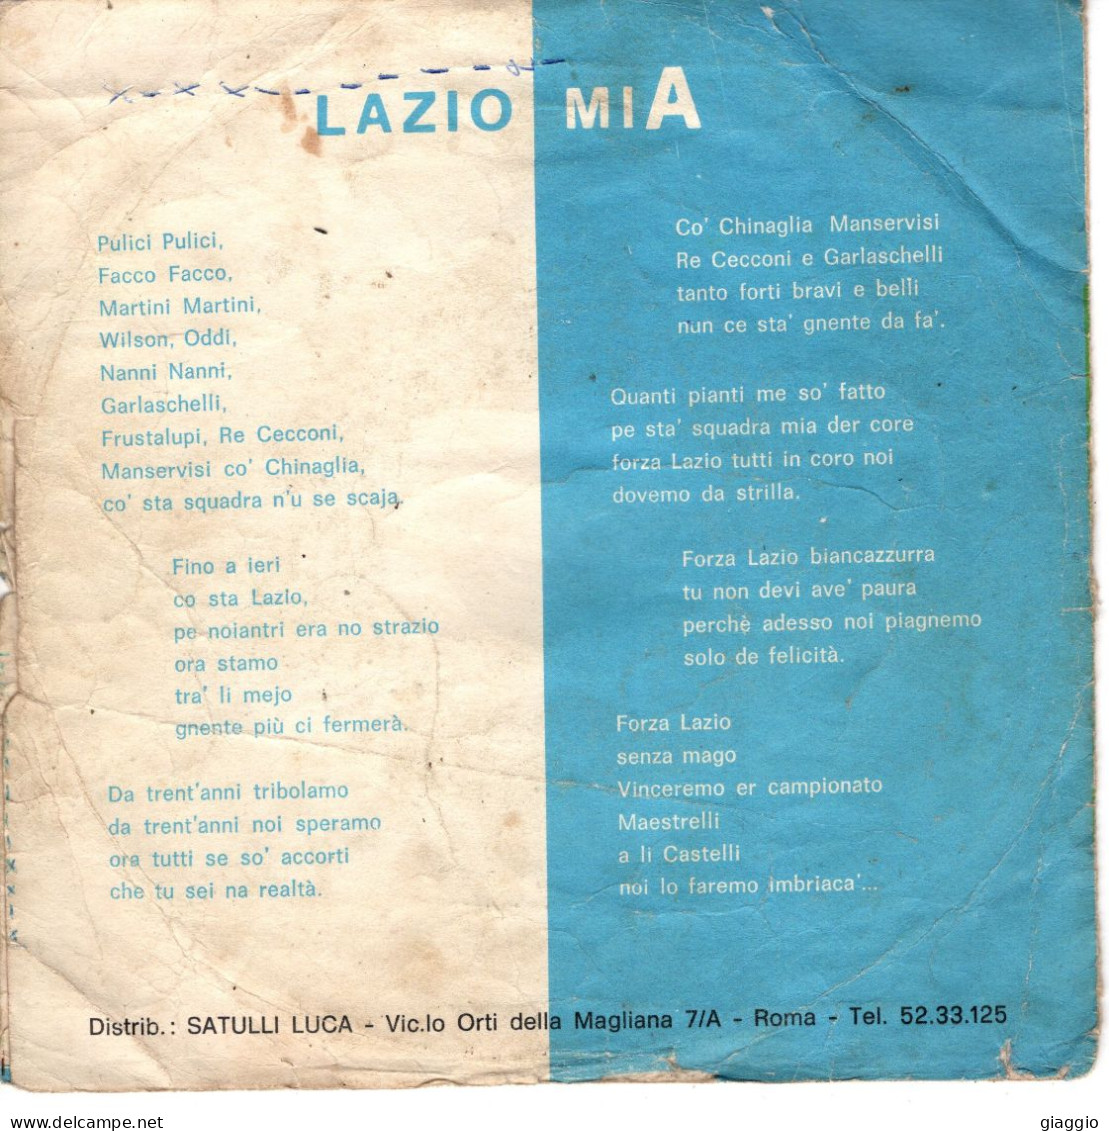 °°° 587) 45 GIRI - S. SILVESTRI - LAZIO MIA / INNO DI MAMELI °°° - Otros - Canción Italiana